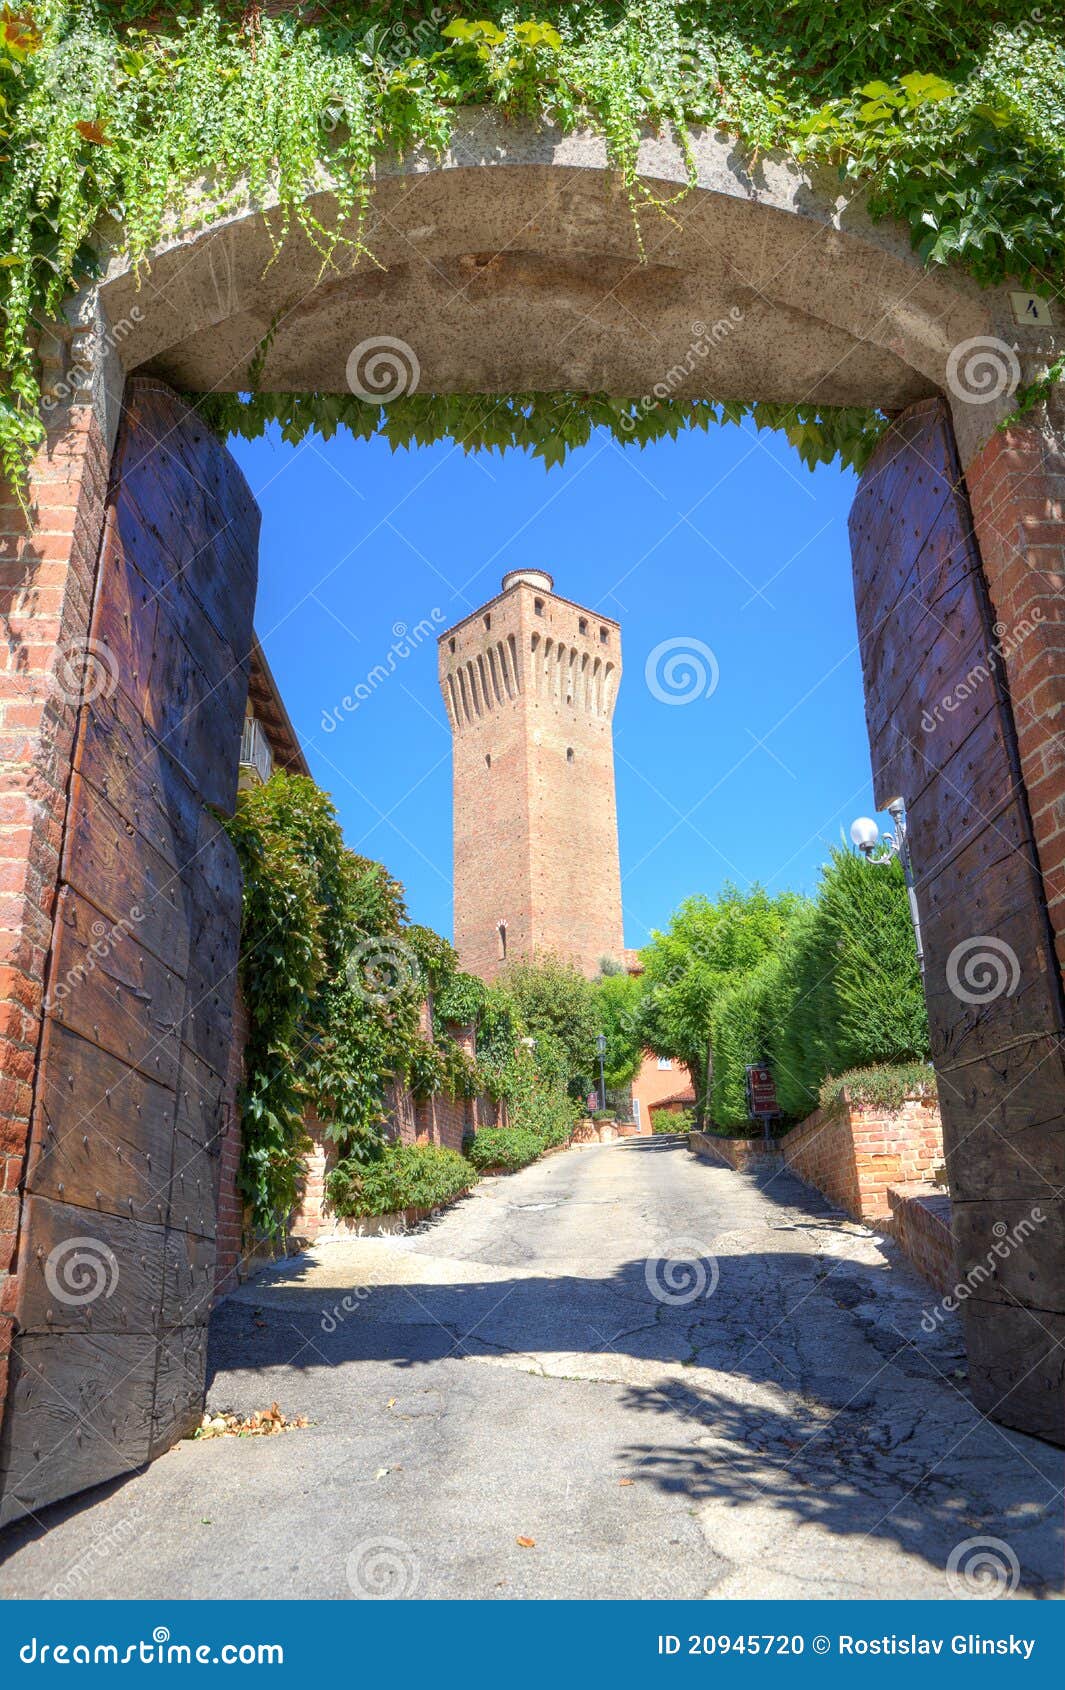 ancient tower in santa vittoria d'alba, italy.